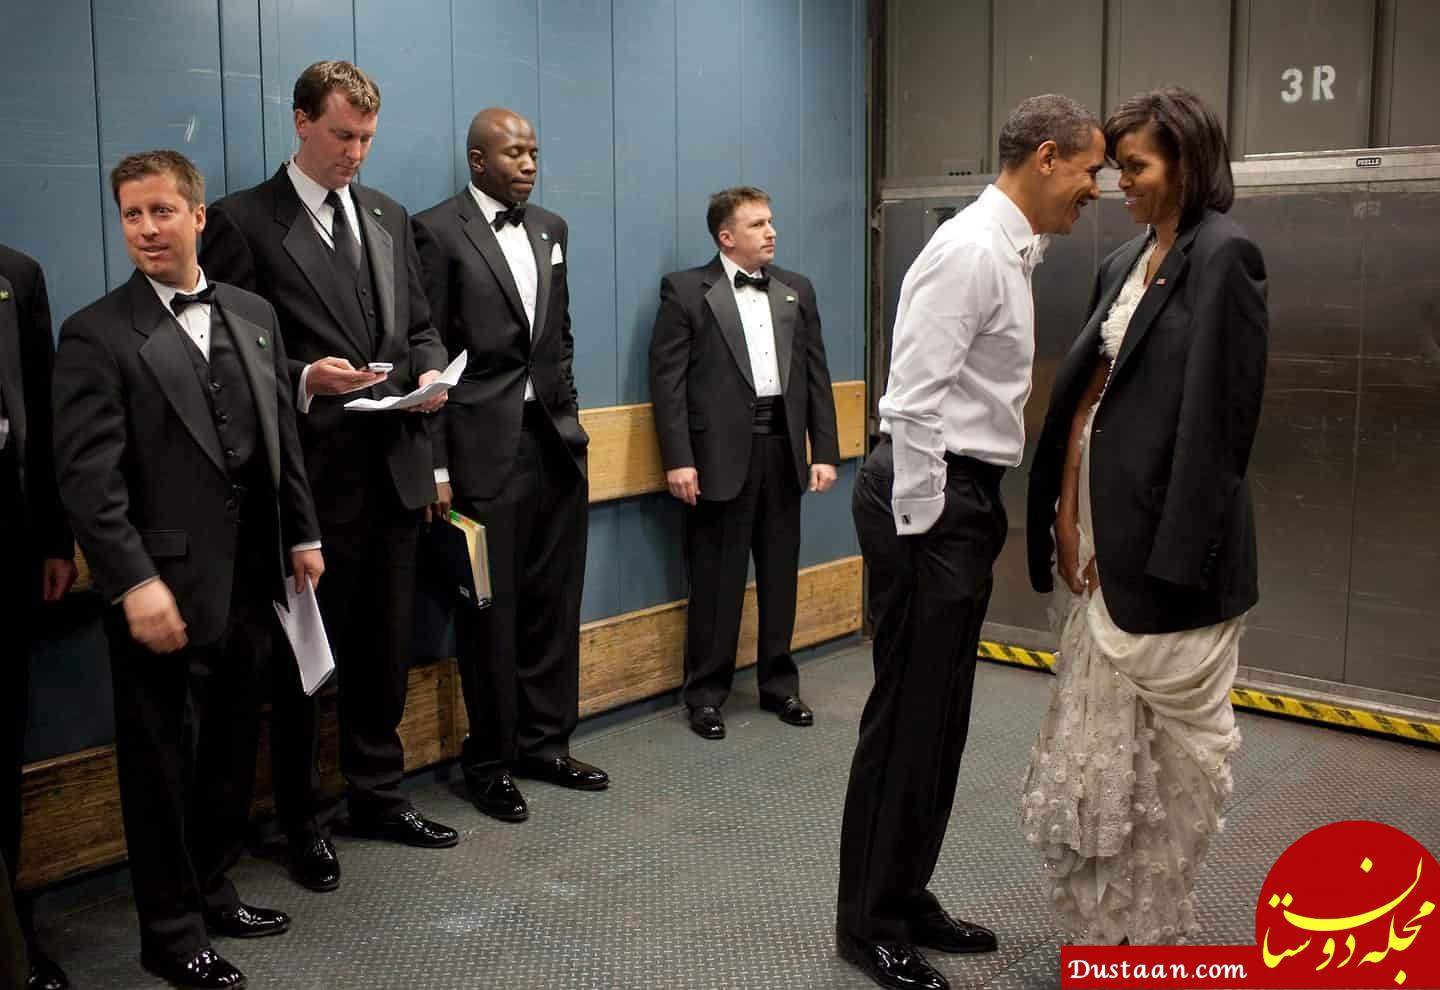 تصاویری خاص و متفاوت از اوباما در دوران ریاست جمهوری اش